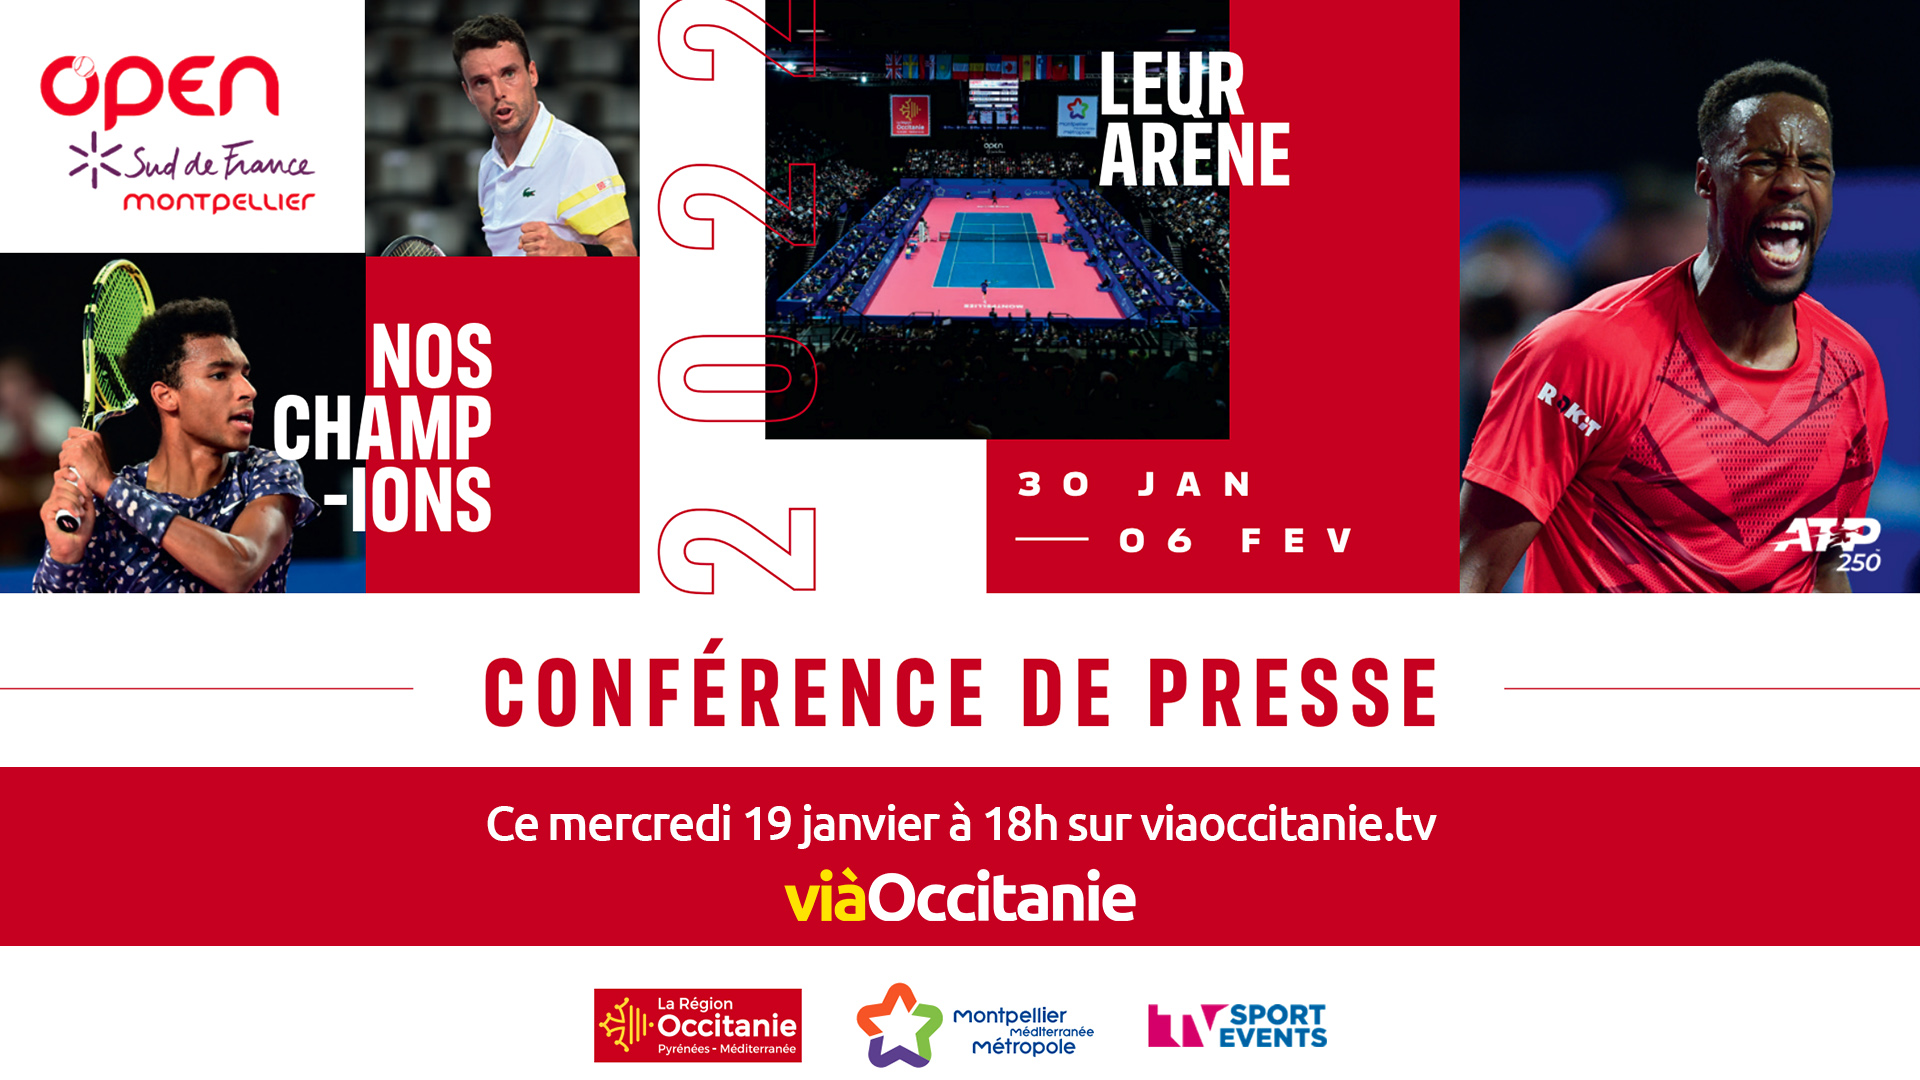 Conférence de presse Open Sud de France - Montpellier 2022